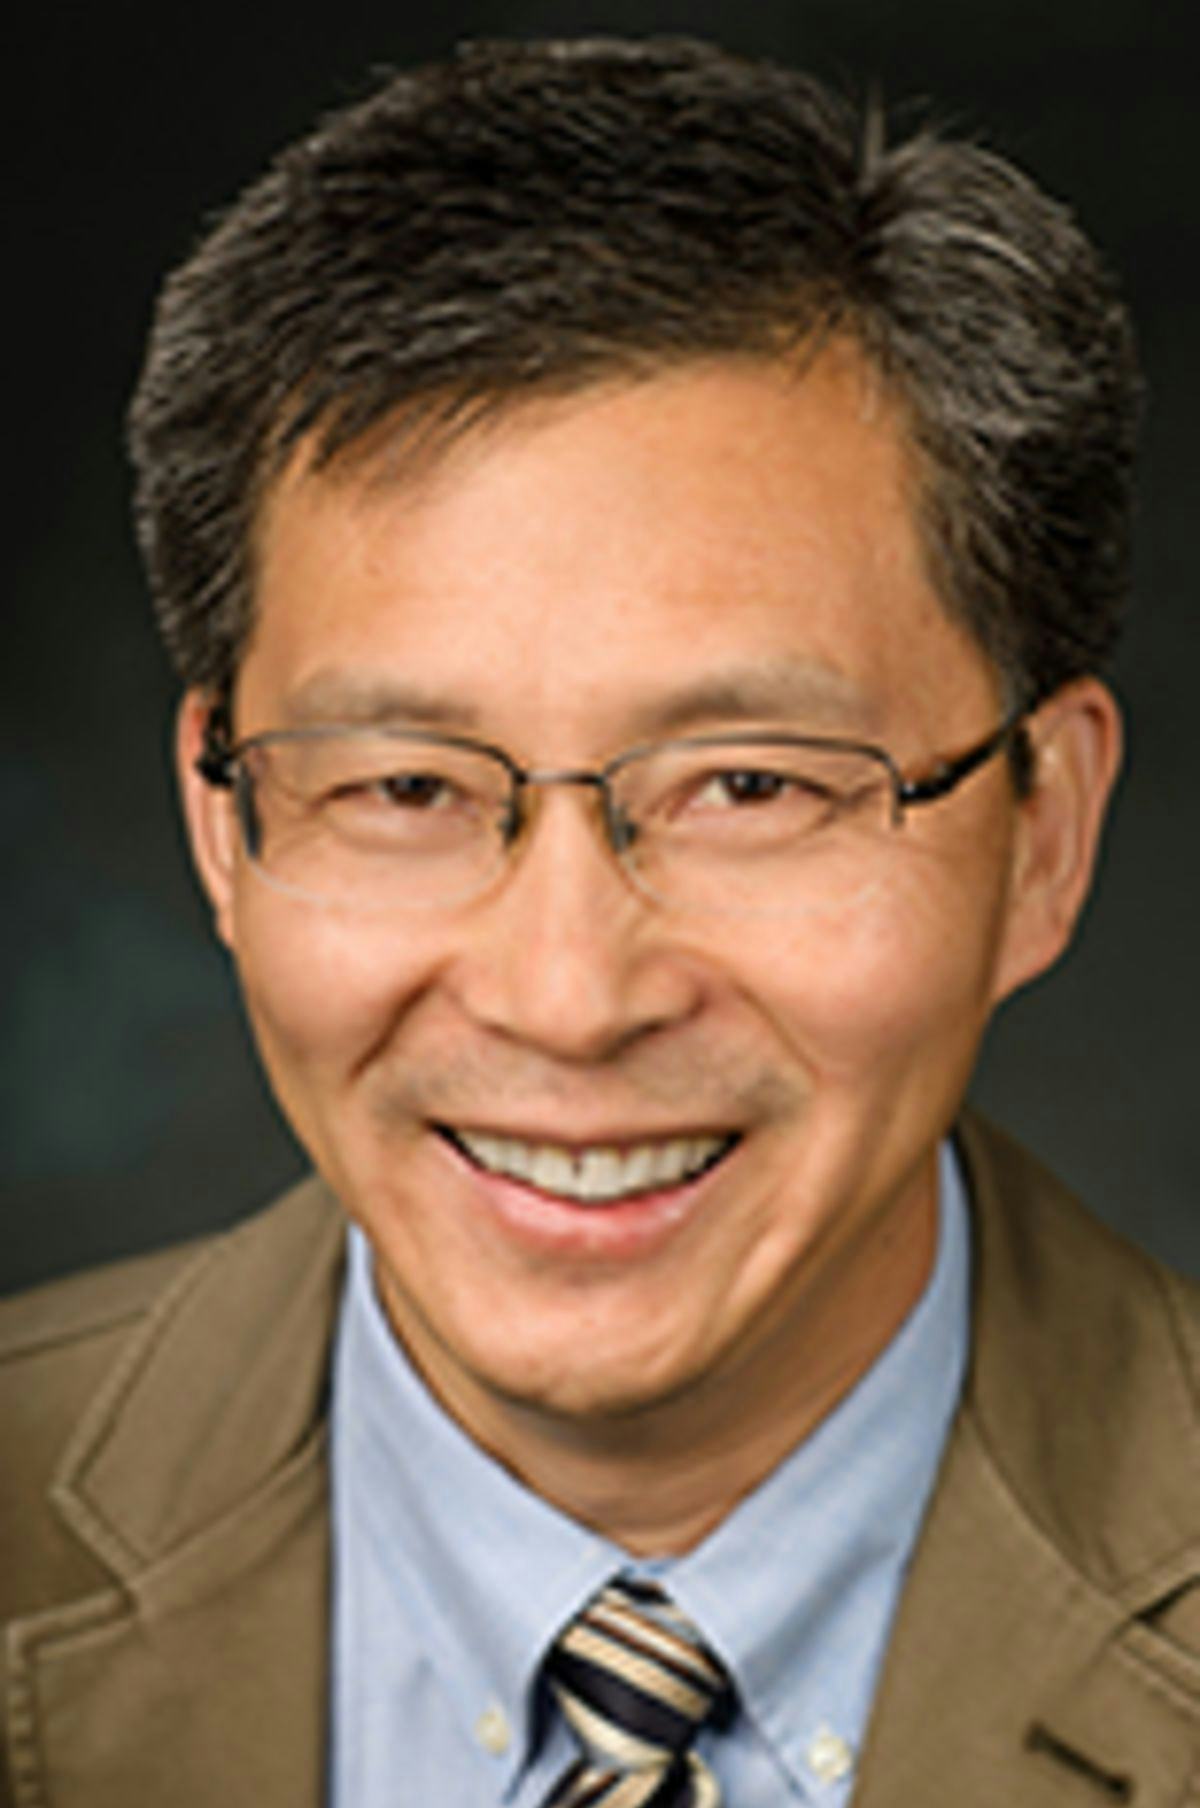 Headshot of Dr. Steve Yang against a black backdrop.